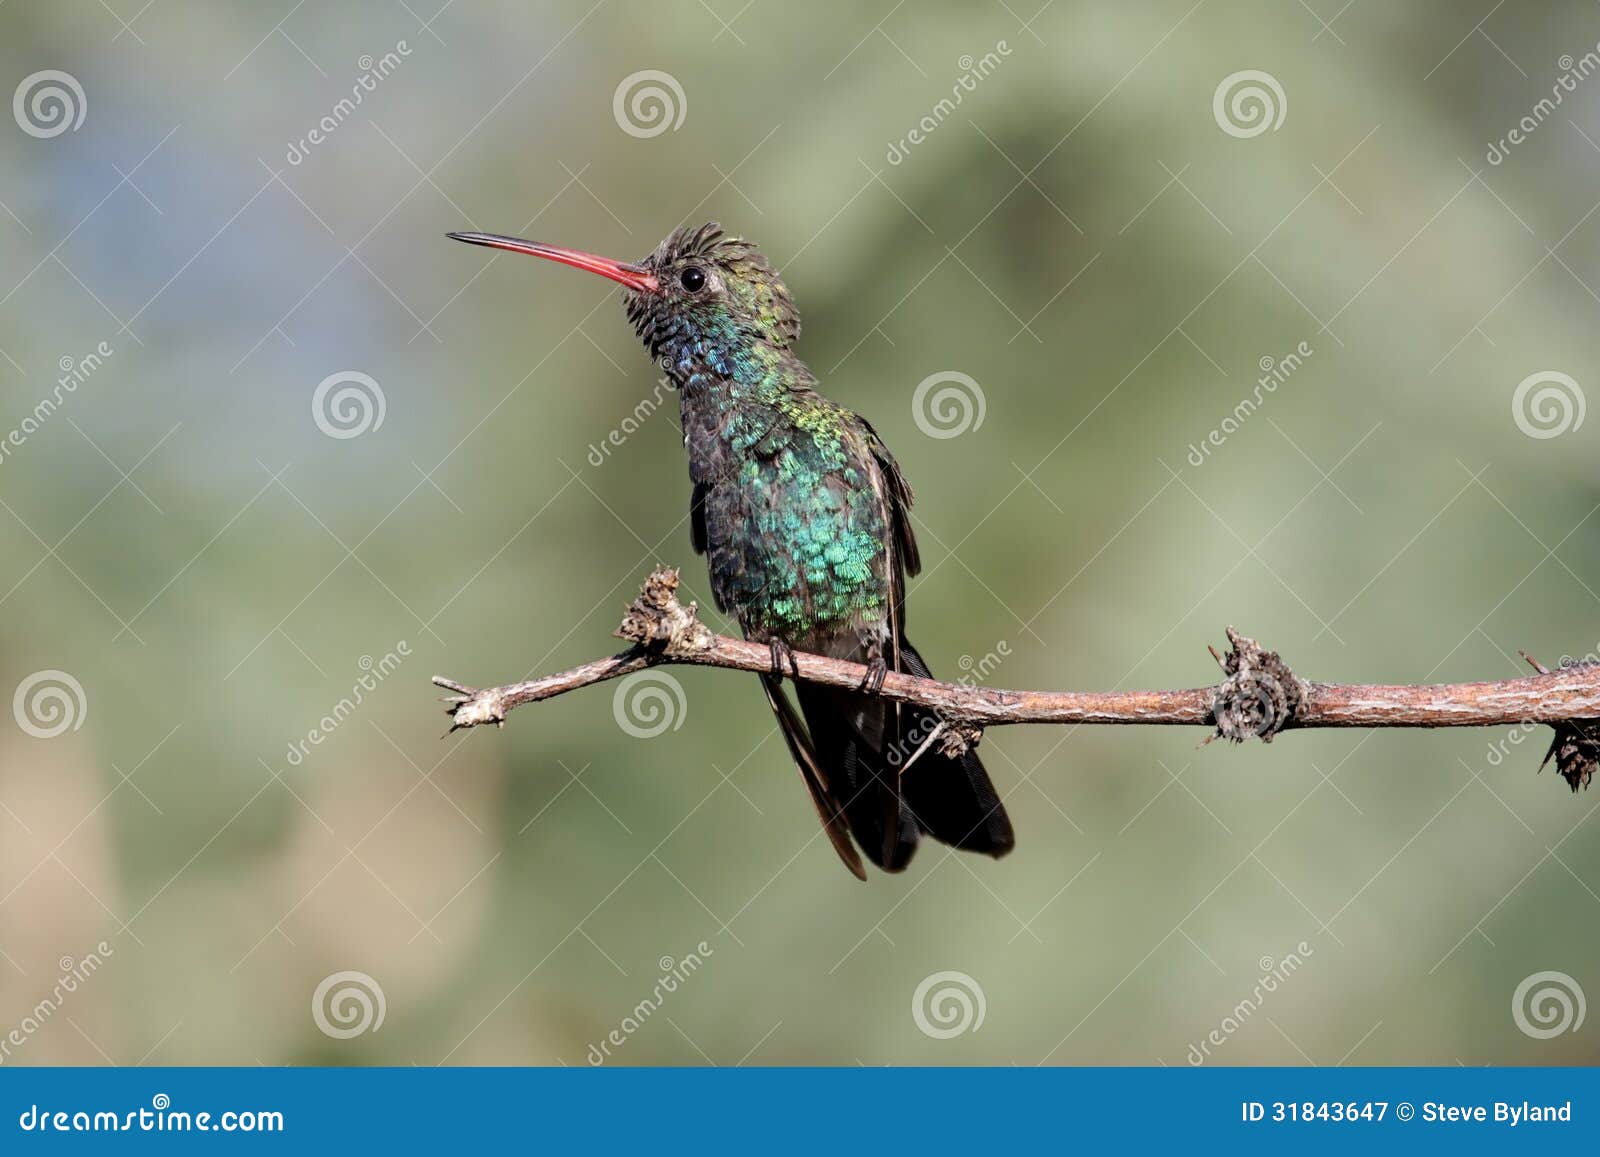 broad-billed hummingbird (cynanthus latirostris)